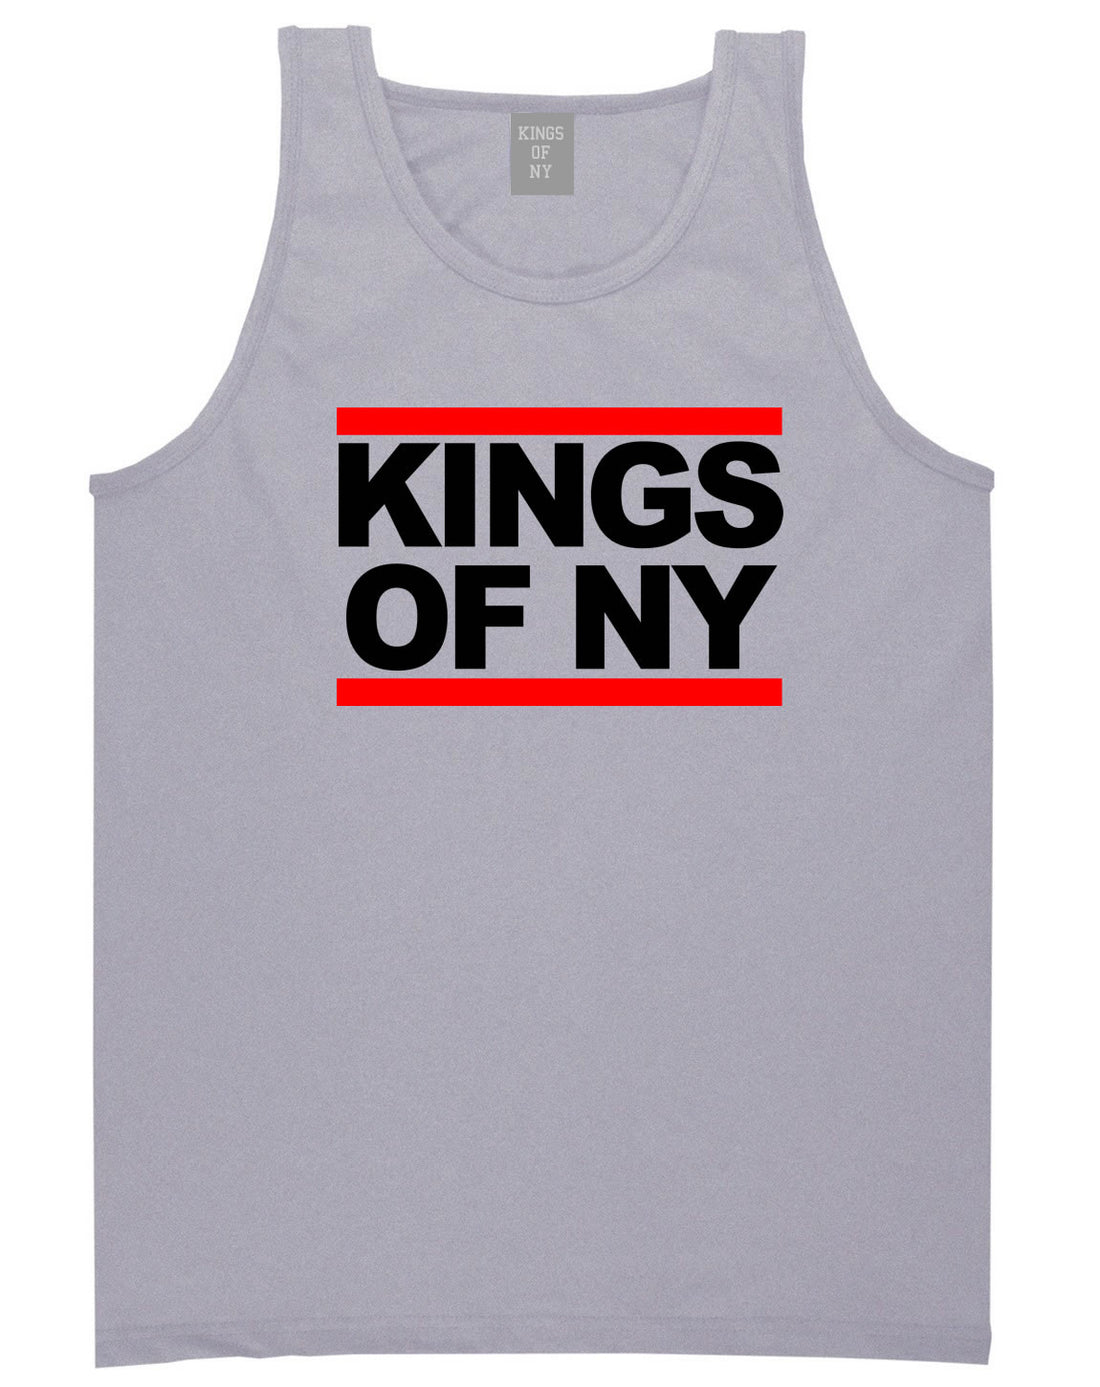 Kings Of NY Run DMC Logo Style Tank Top in Grey By Kings Of NY